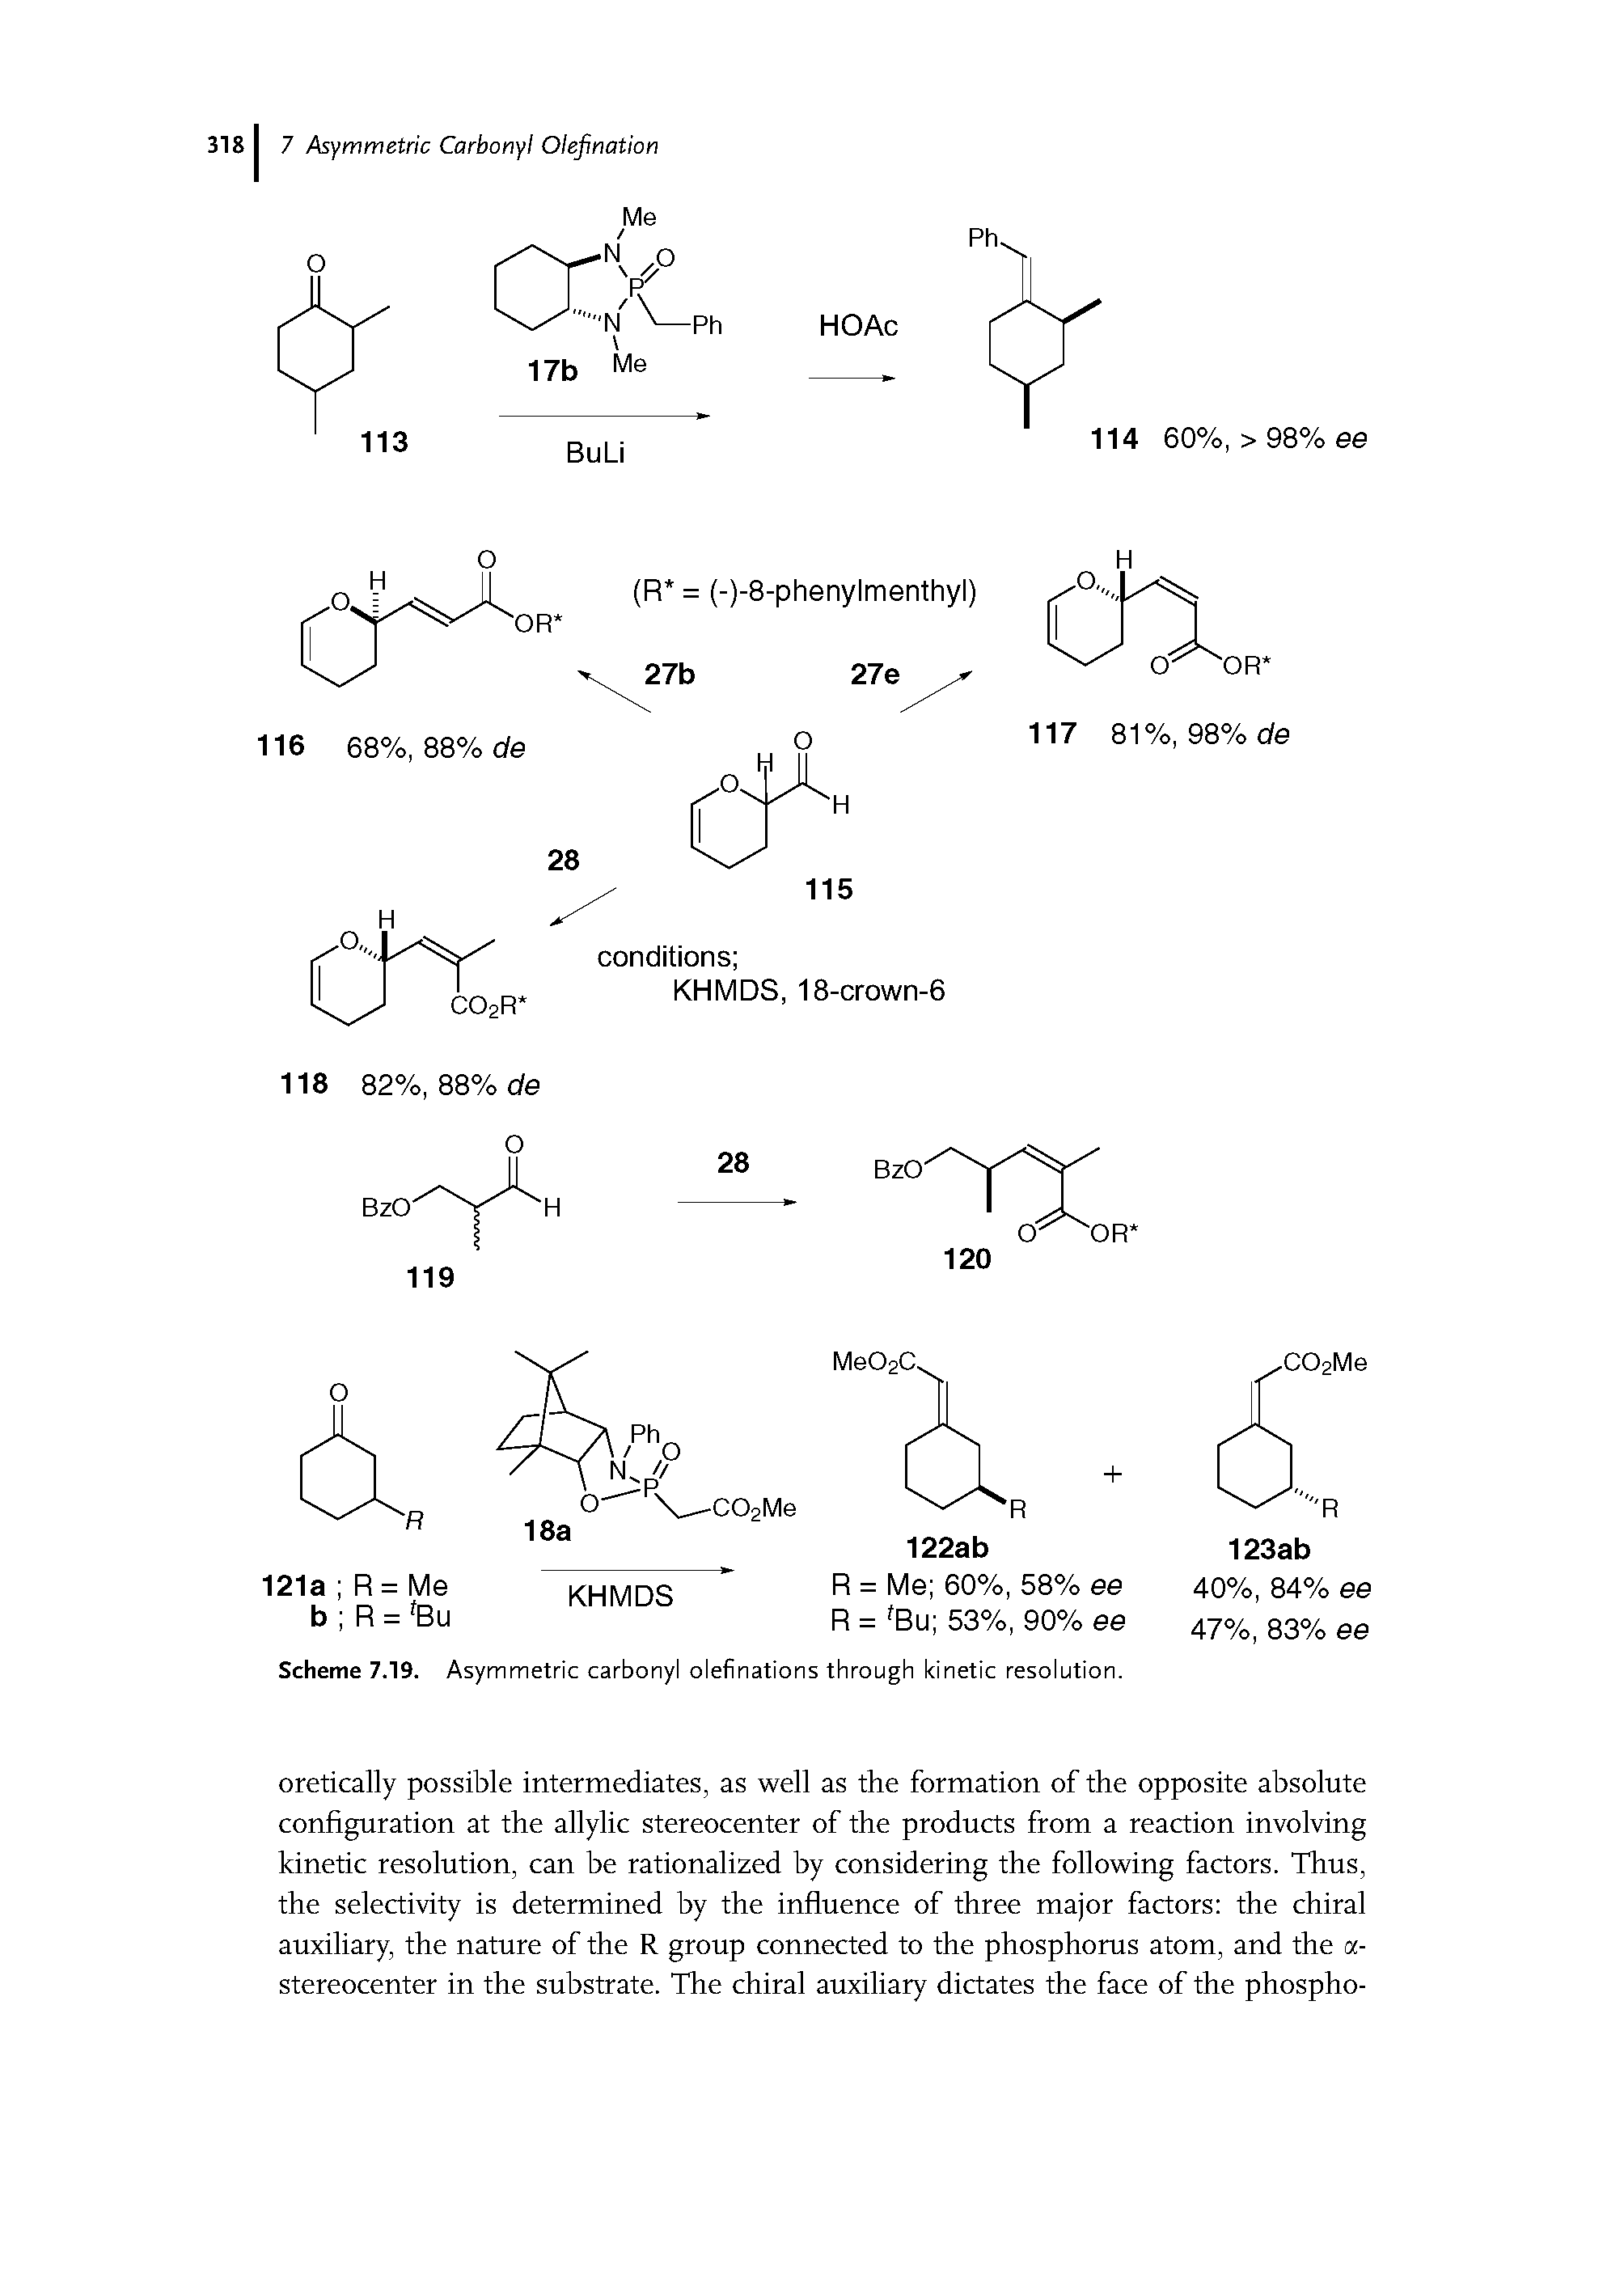 Scheme 7.19. Asymmetric carbonyl olefinations through kinetic resolution.